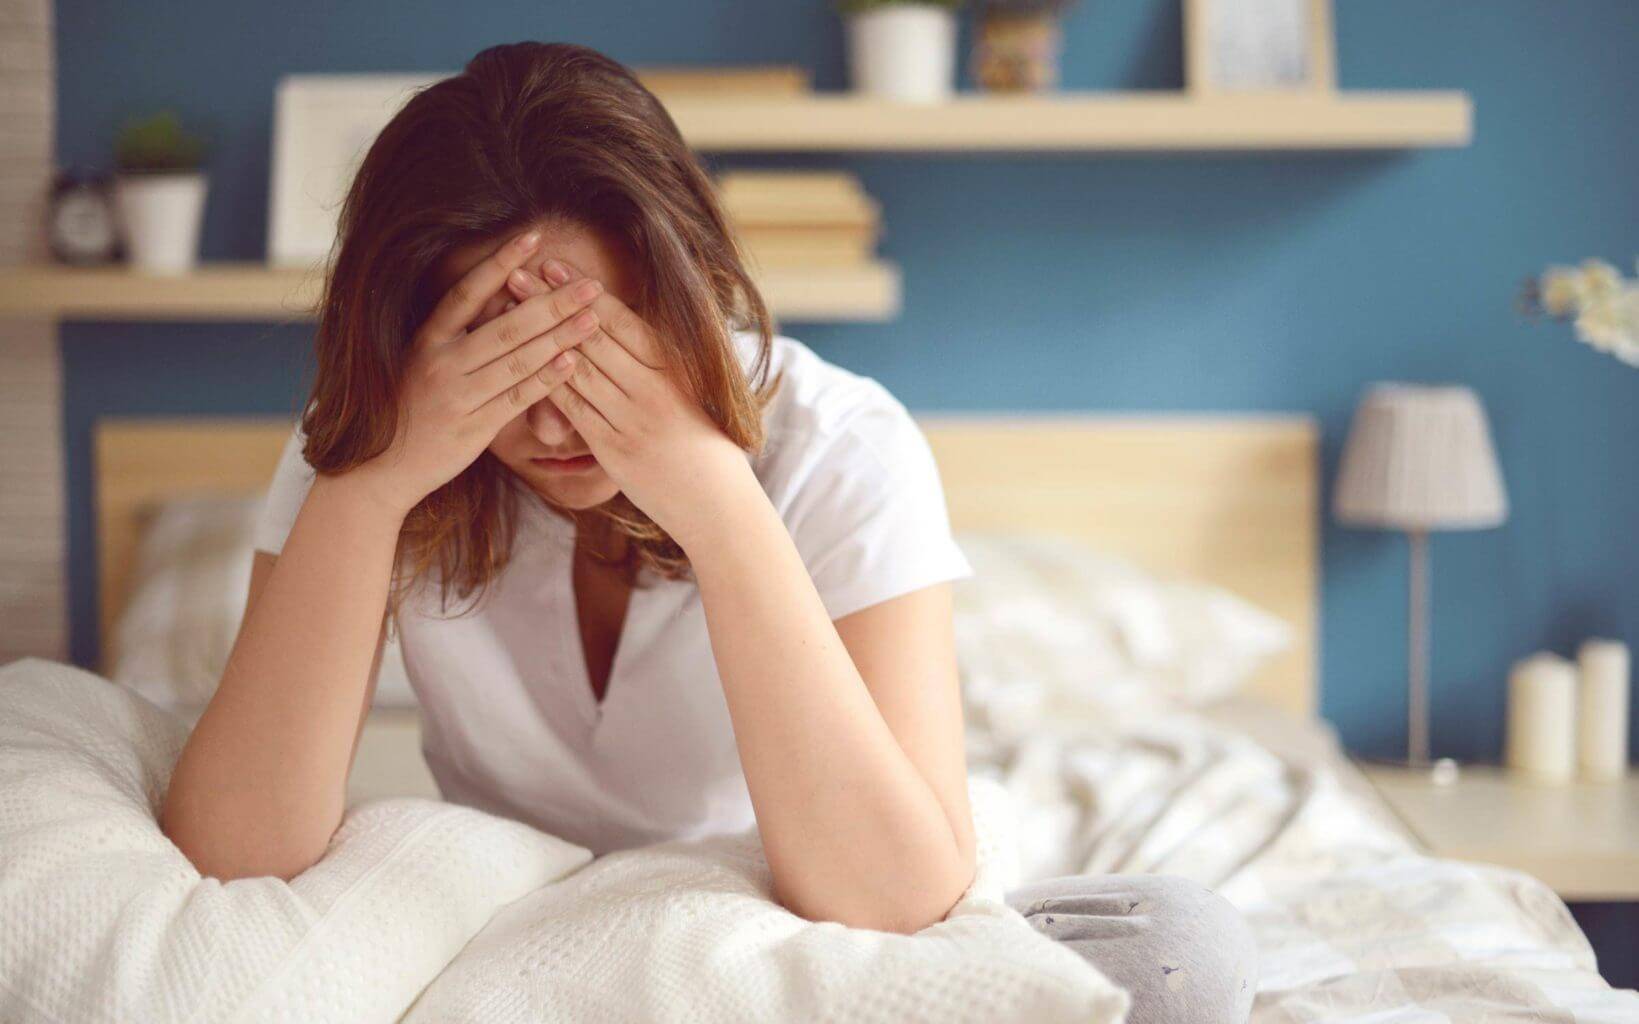 Нарушение сна: плохой сон, проблемы со сном, причины и лечение у взрослых, как восстановить сон